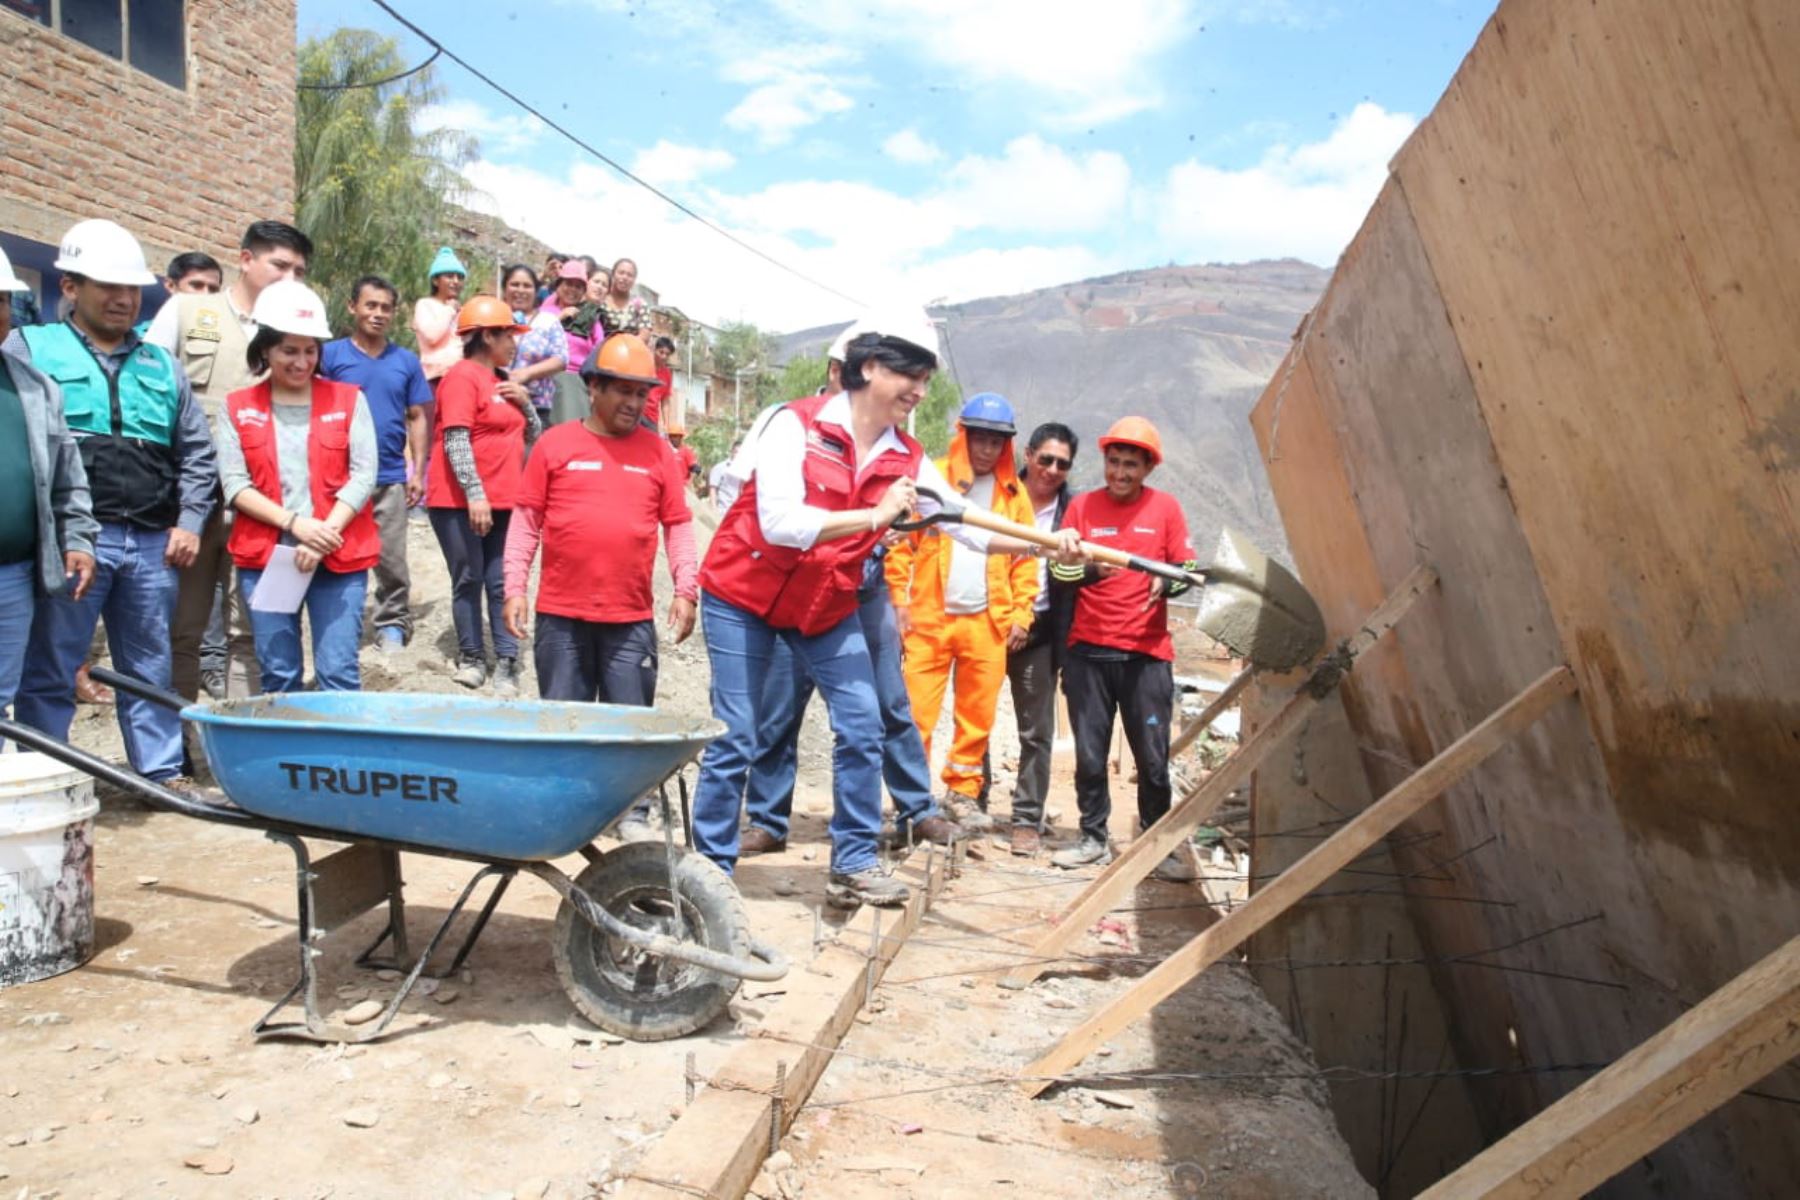 “El Gobierno impulsa la inclusión social y gracias a Trabaja Perú en Huánuco se han generado alrededor de 1,500 empleos temporales desde el 2018", afirmó la ministra Cáceres.